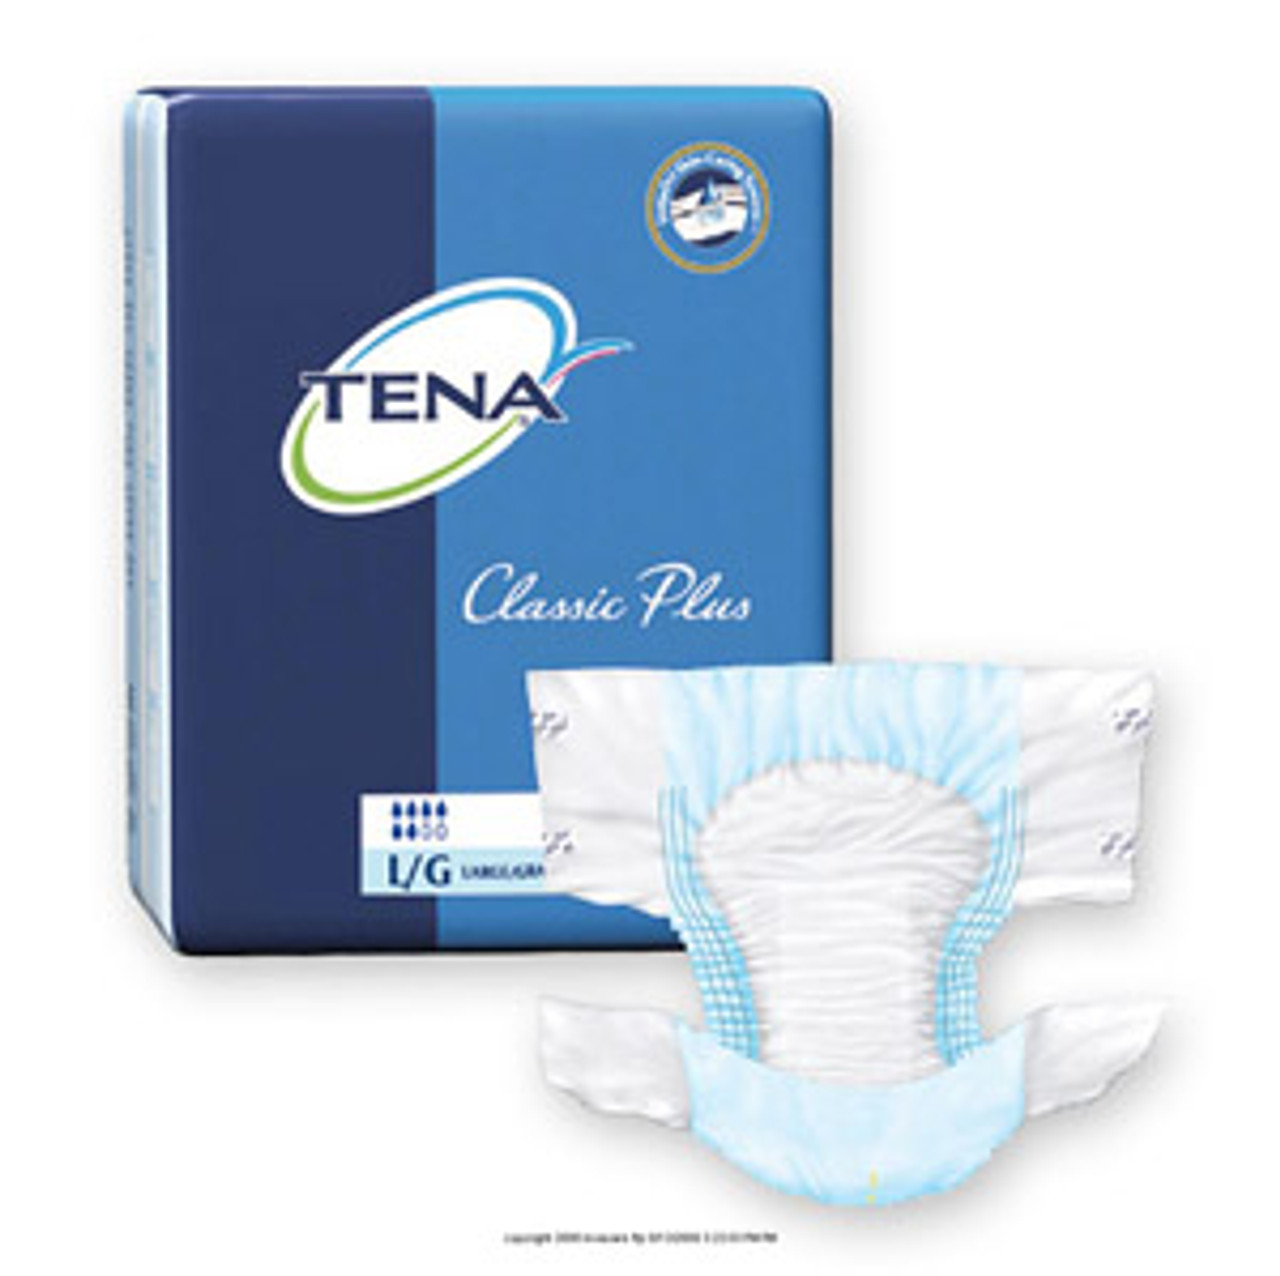 TENA® Classic Plus Brief